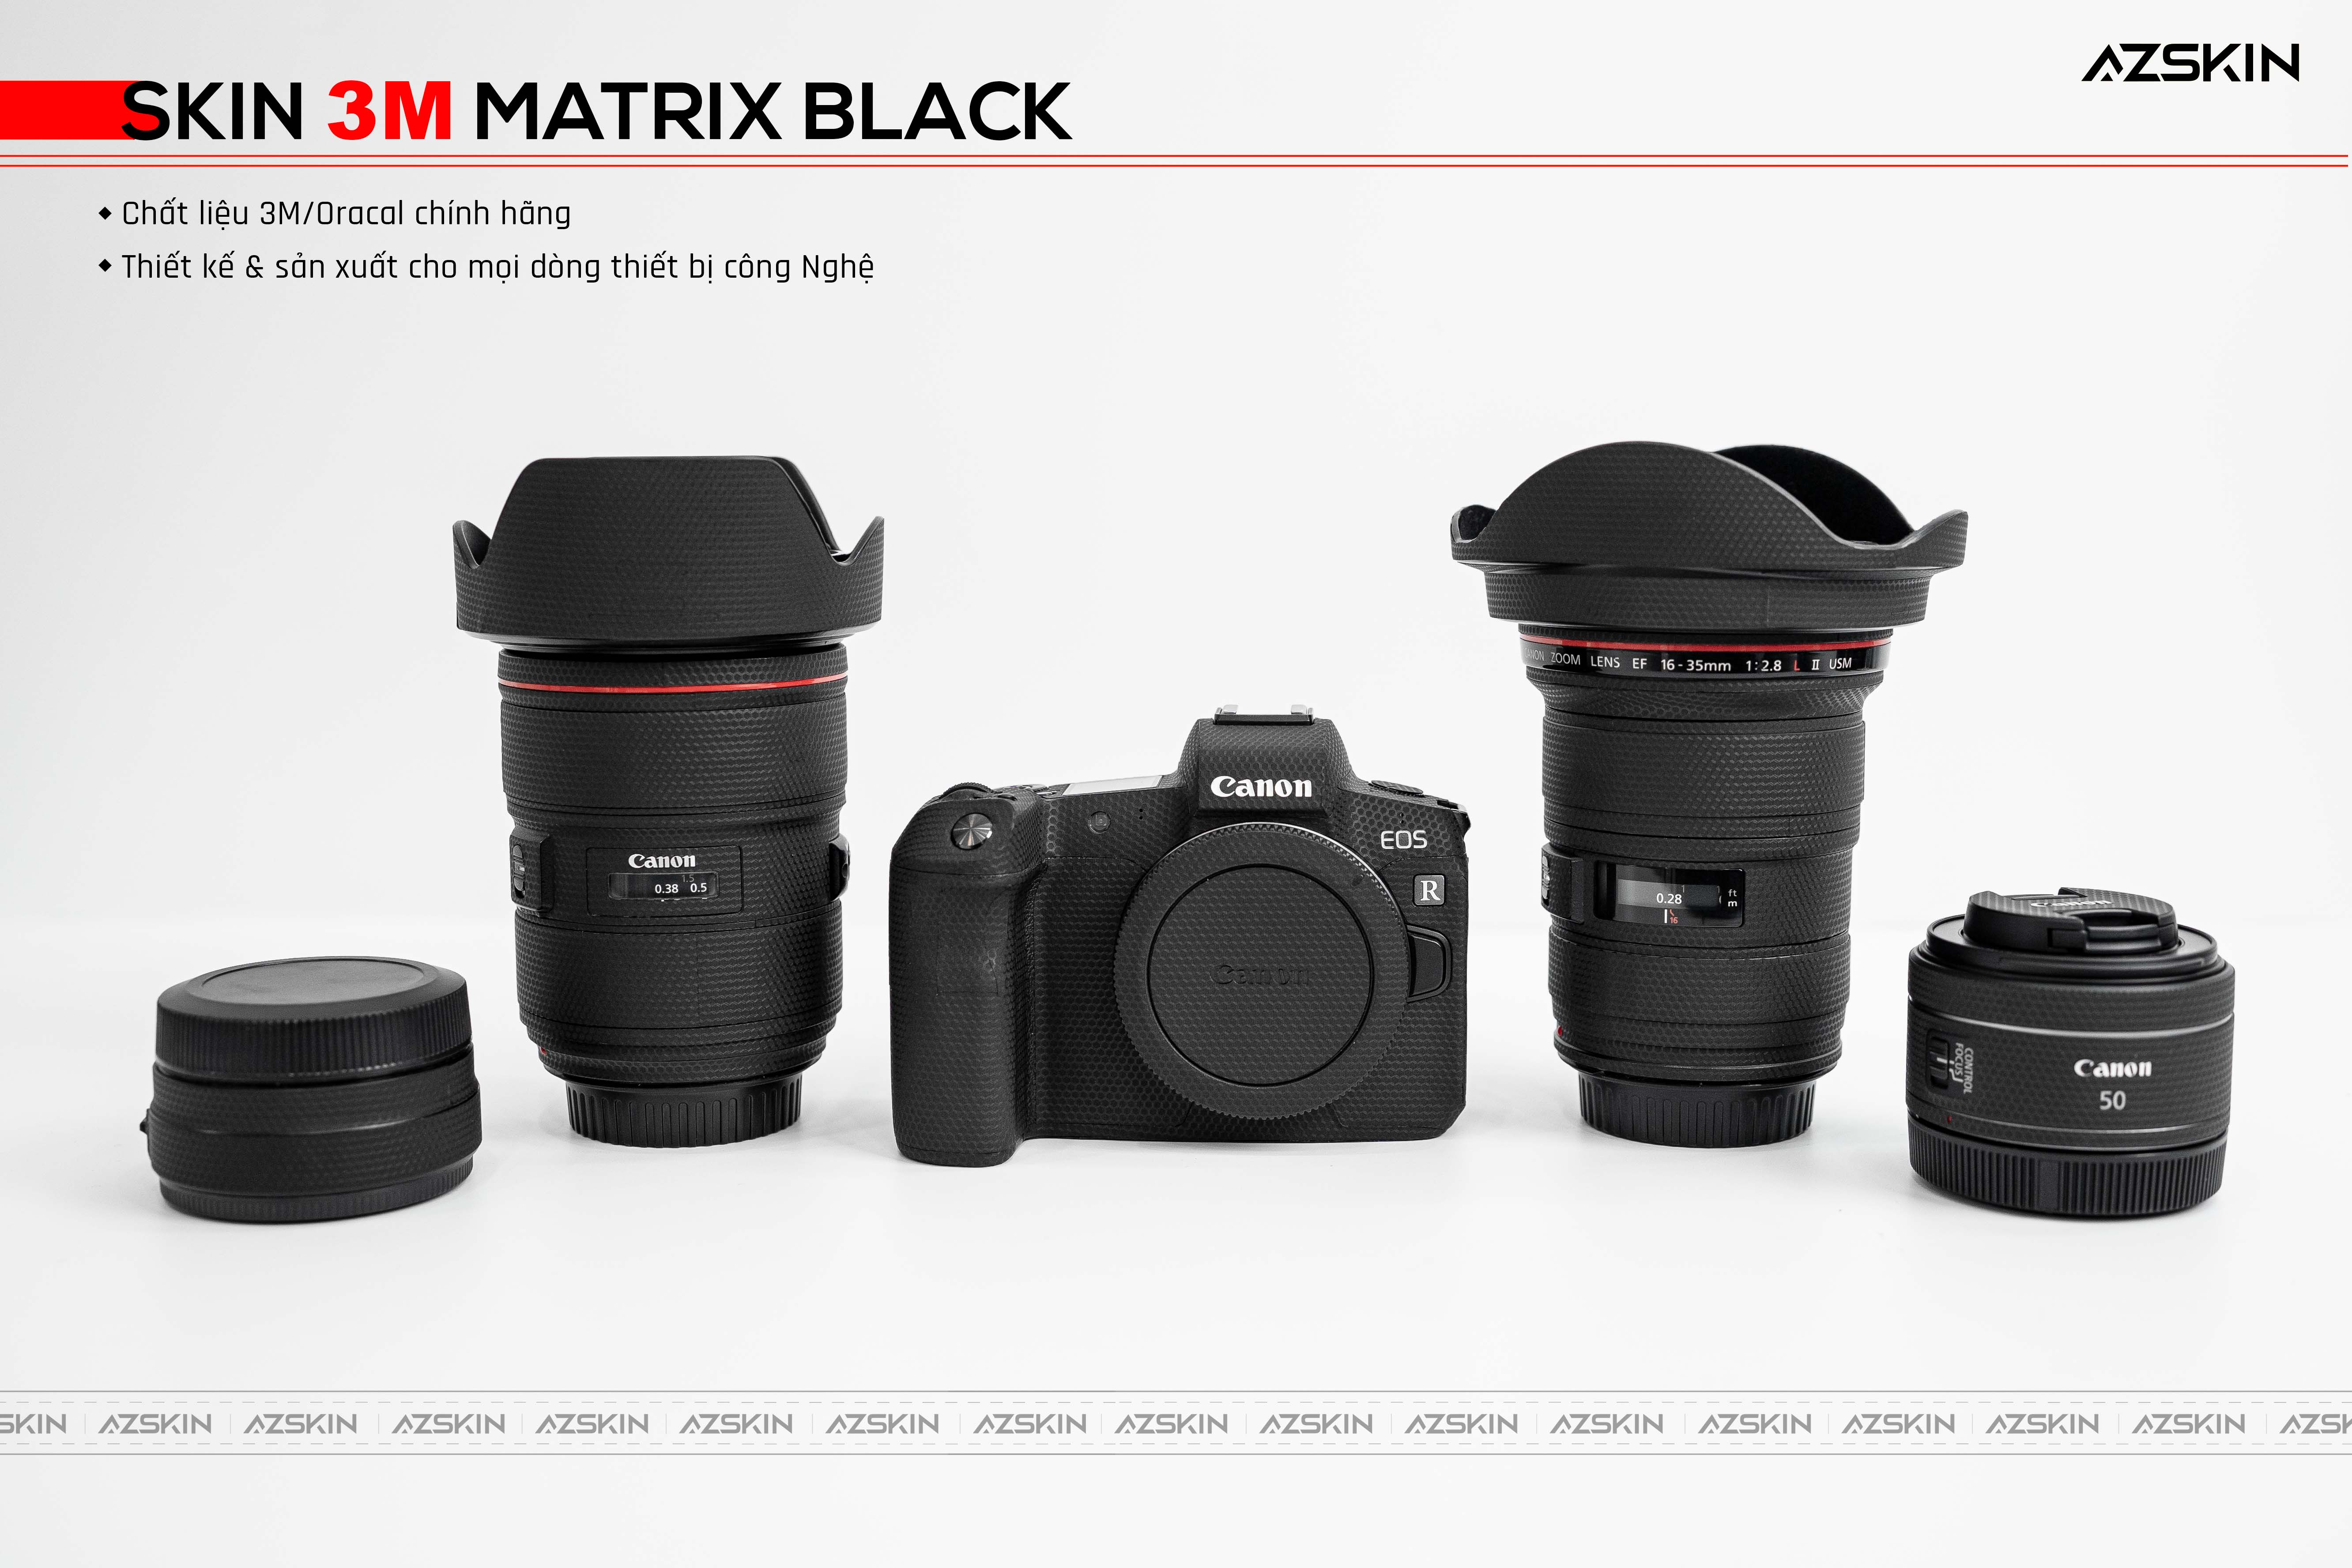 Skin 3M Matrix Black dán lens máy ảnh